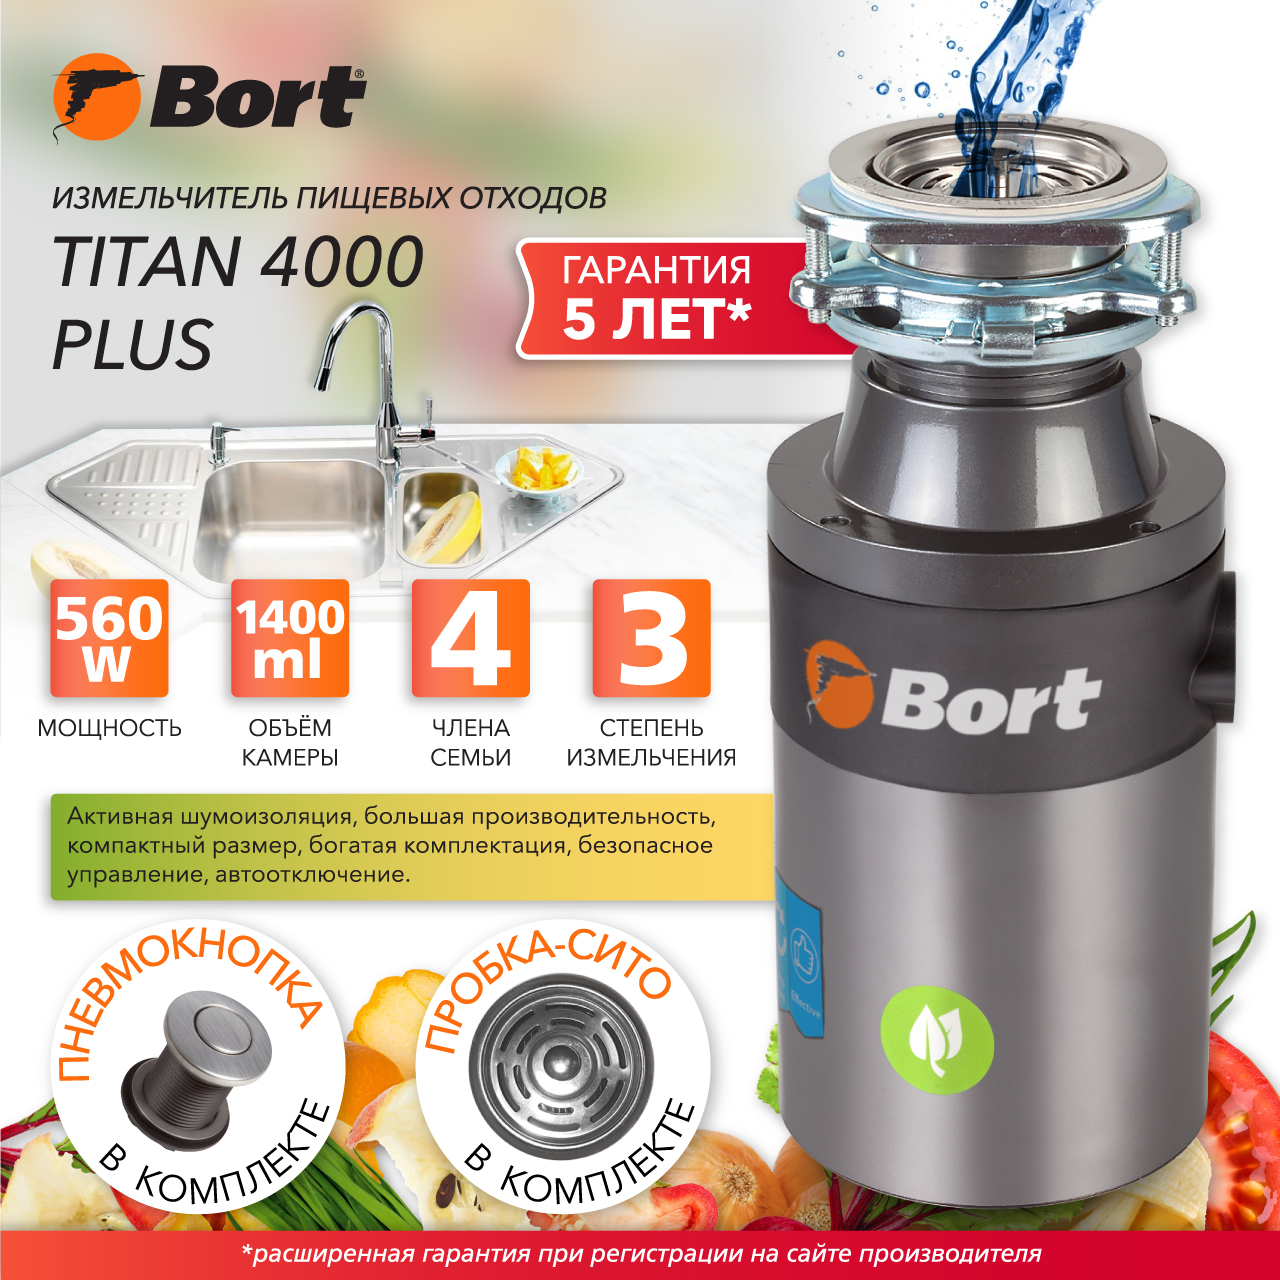 Измельчитель пищевых отходов Bort TITAN 4000 PLUS (91275776) серебристый измельчитель пищевых отходов bort titan 5000 91275783 серебристый